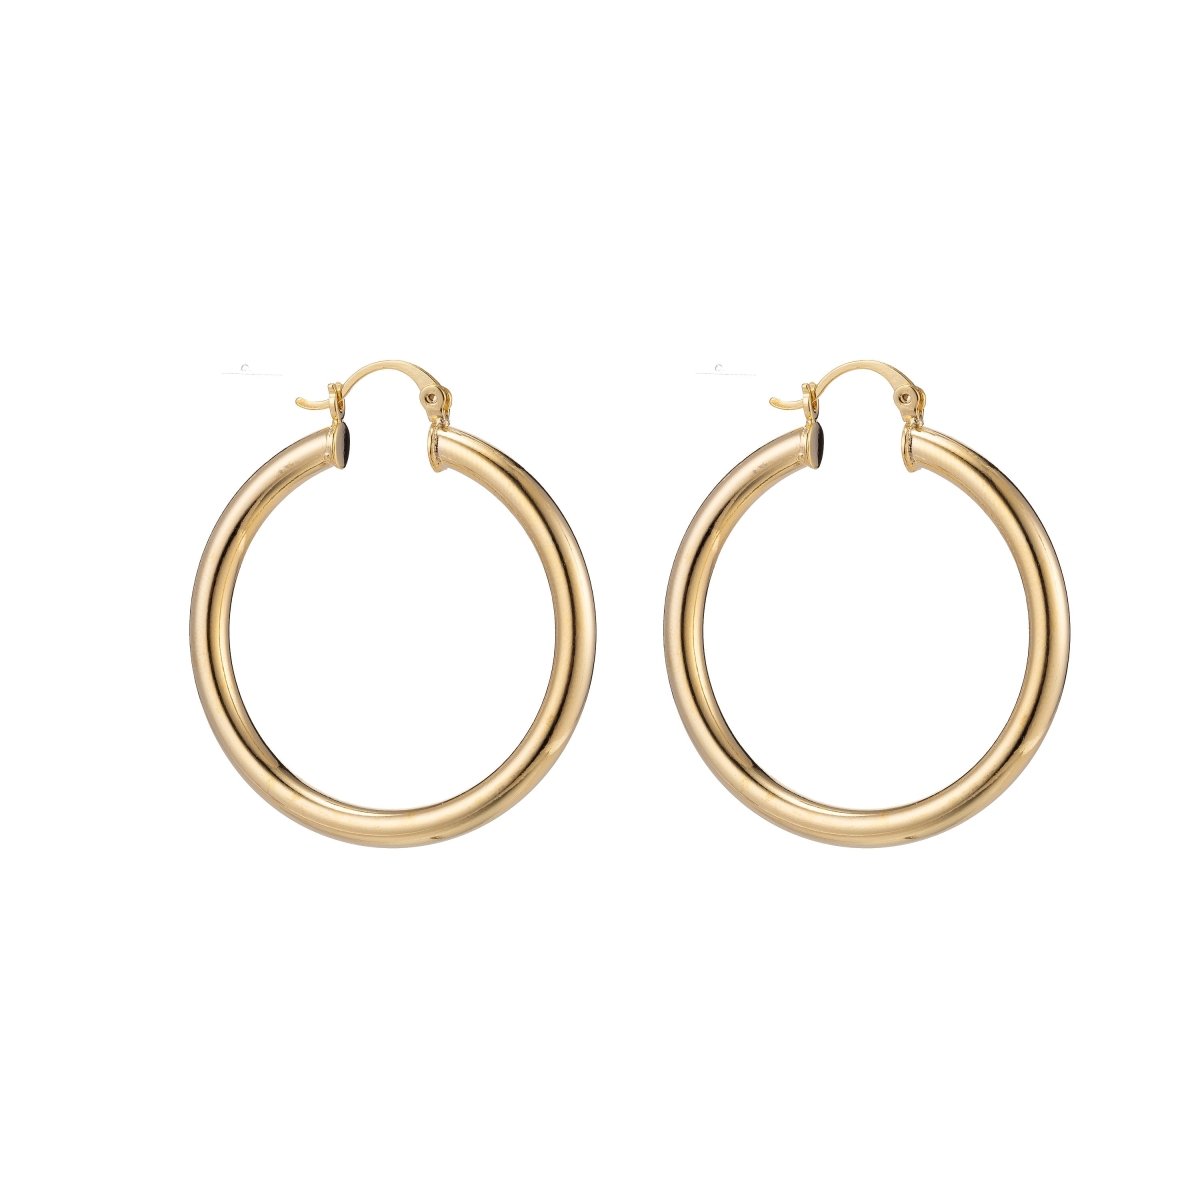 Chunky Gold Hoop Earrings, Fat Hoop Earrings, Chubby Hoop Earrings, Gold Hoop Earrings, Gold Hoops 40mm Rose Gold Hoop Q-464 - Q-471 - DLUXCA